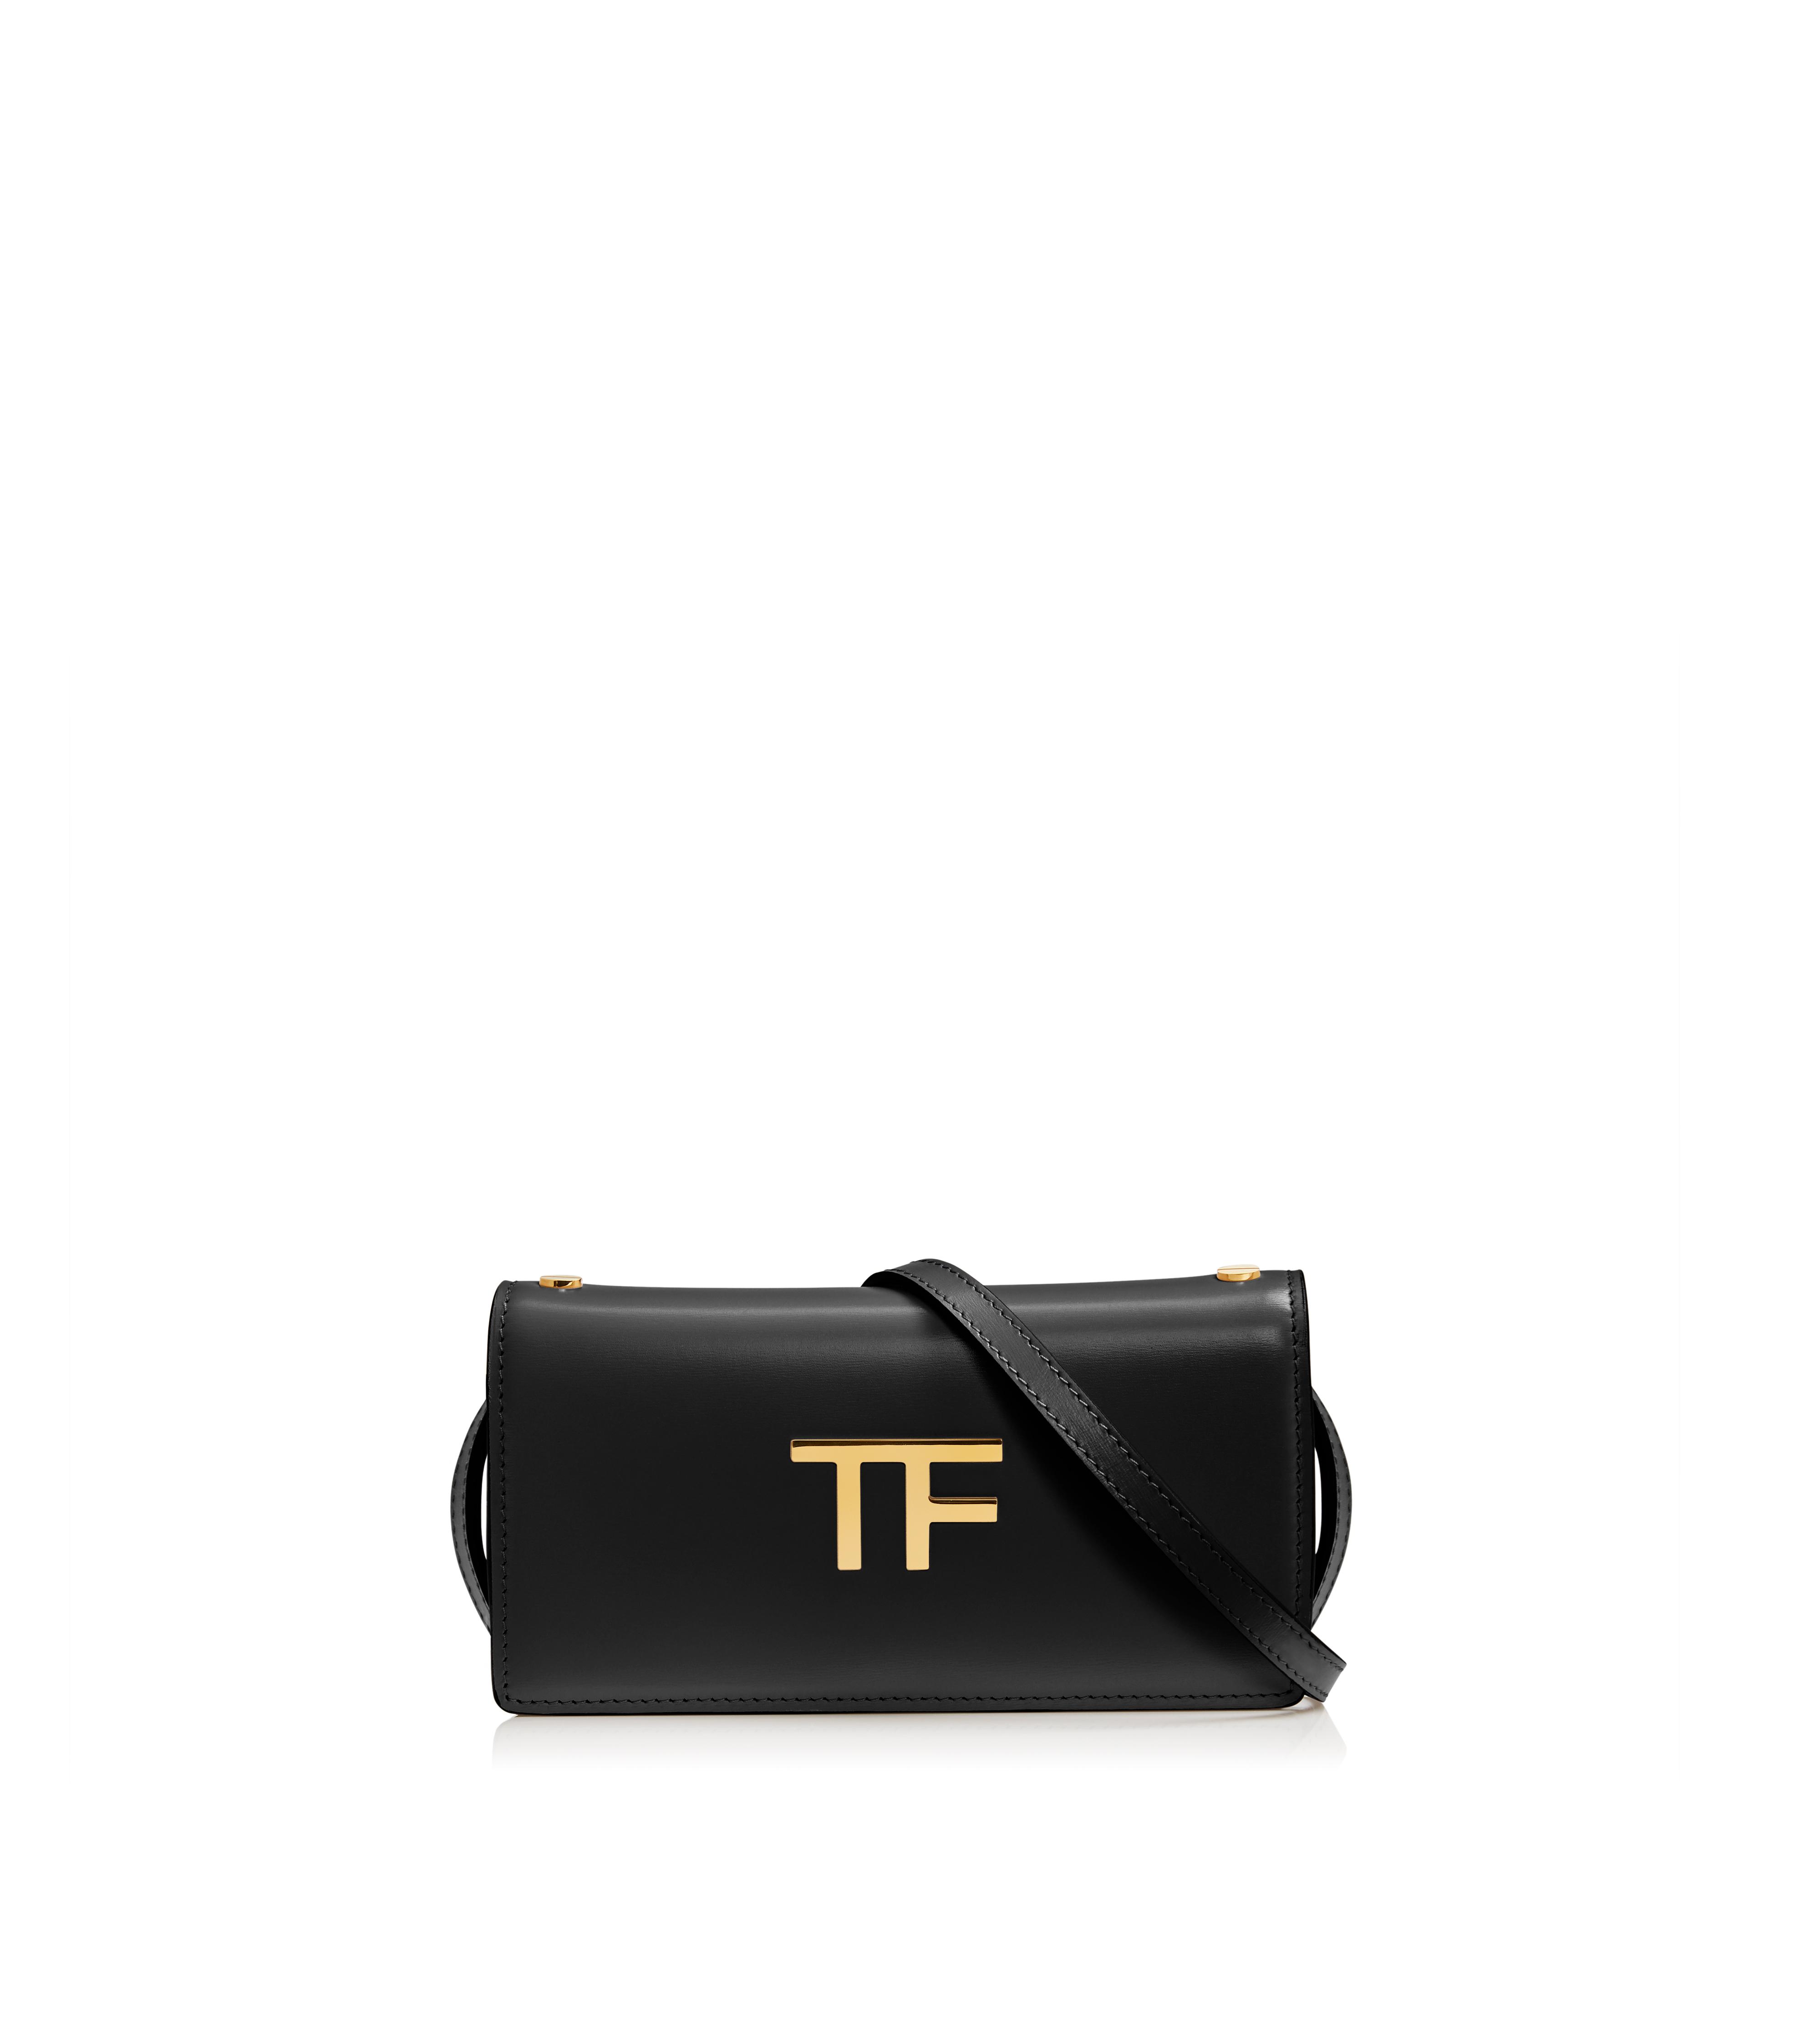 Clutches - Women's Handbags | TomFord.com